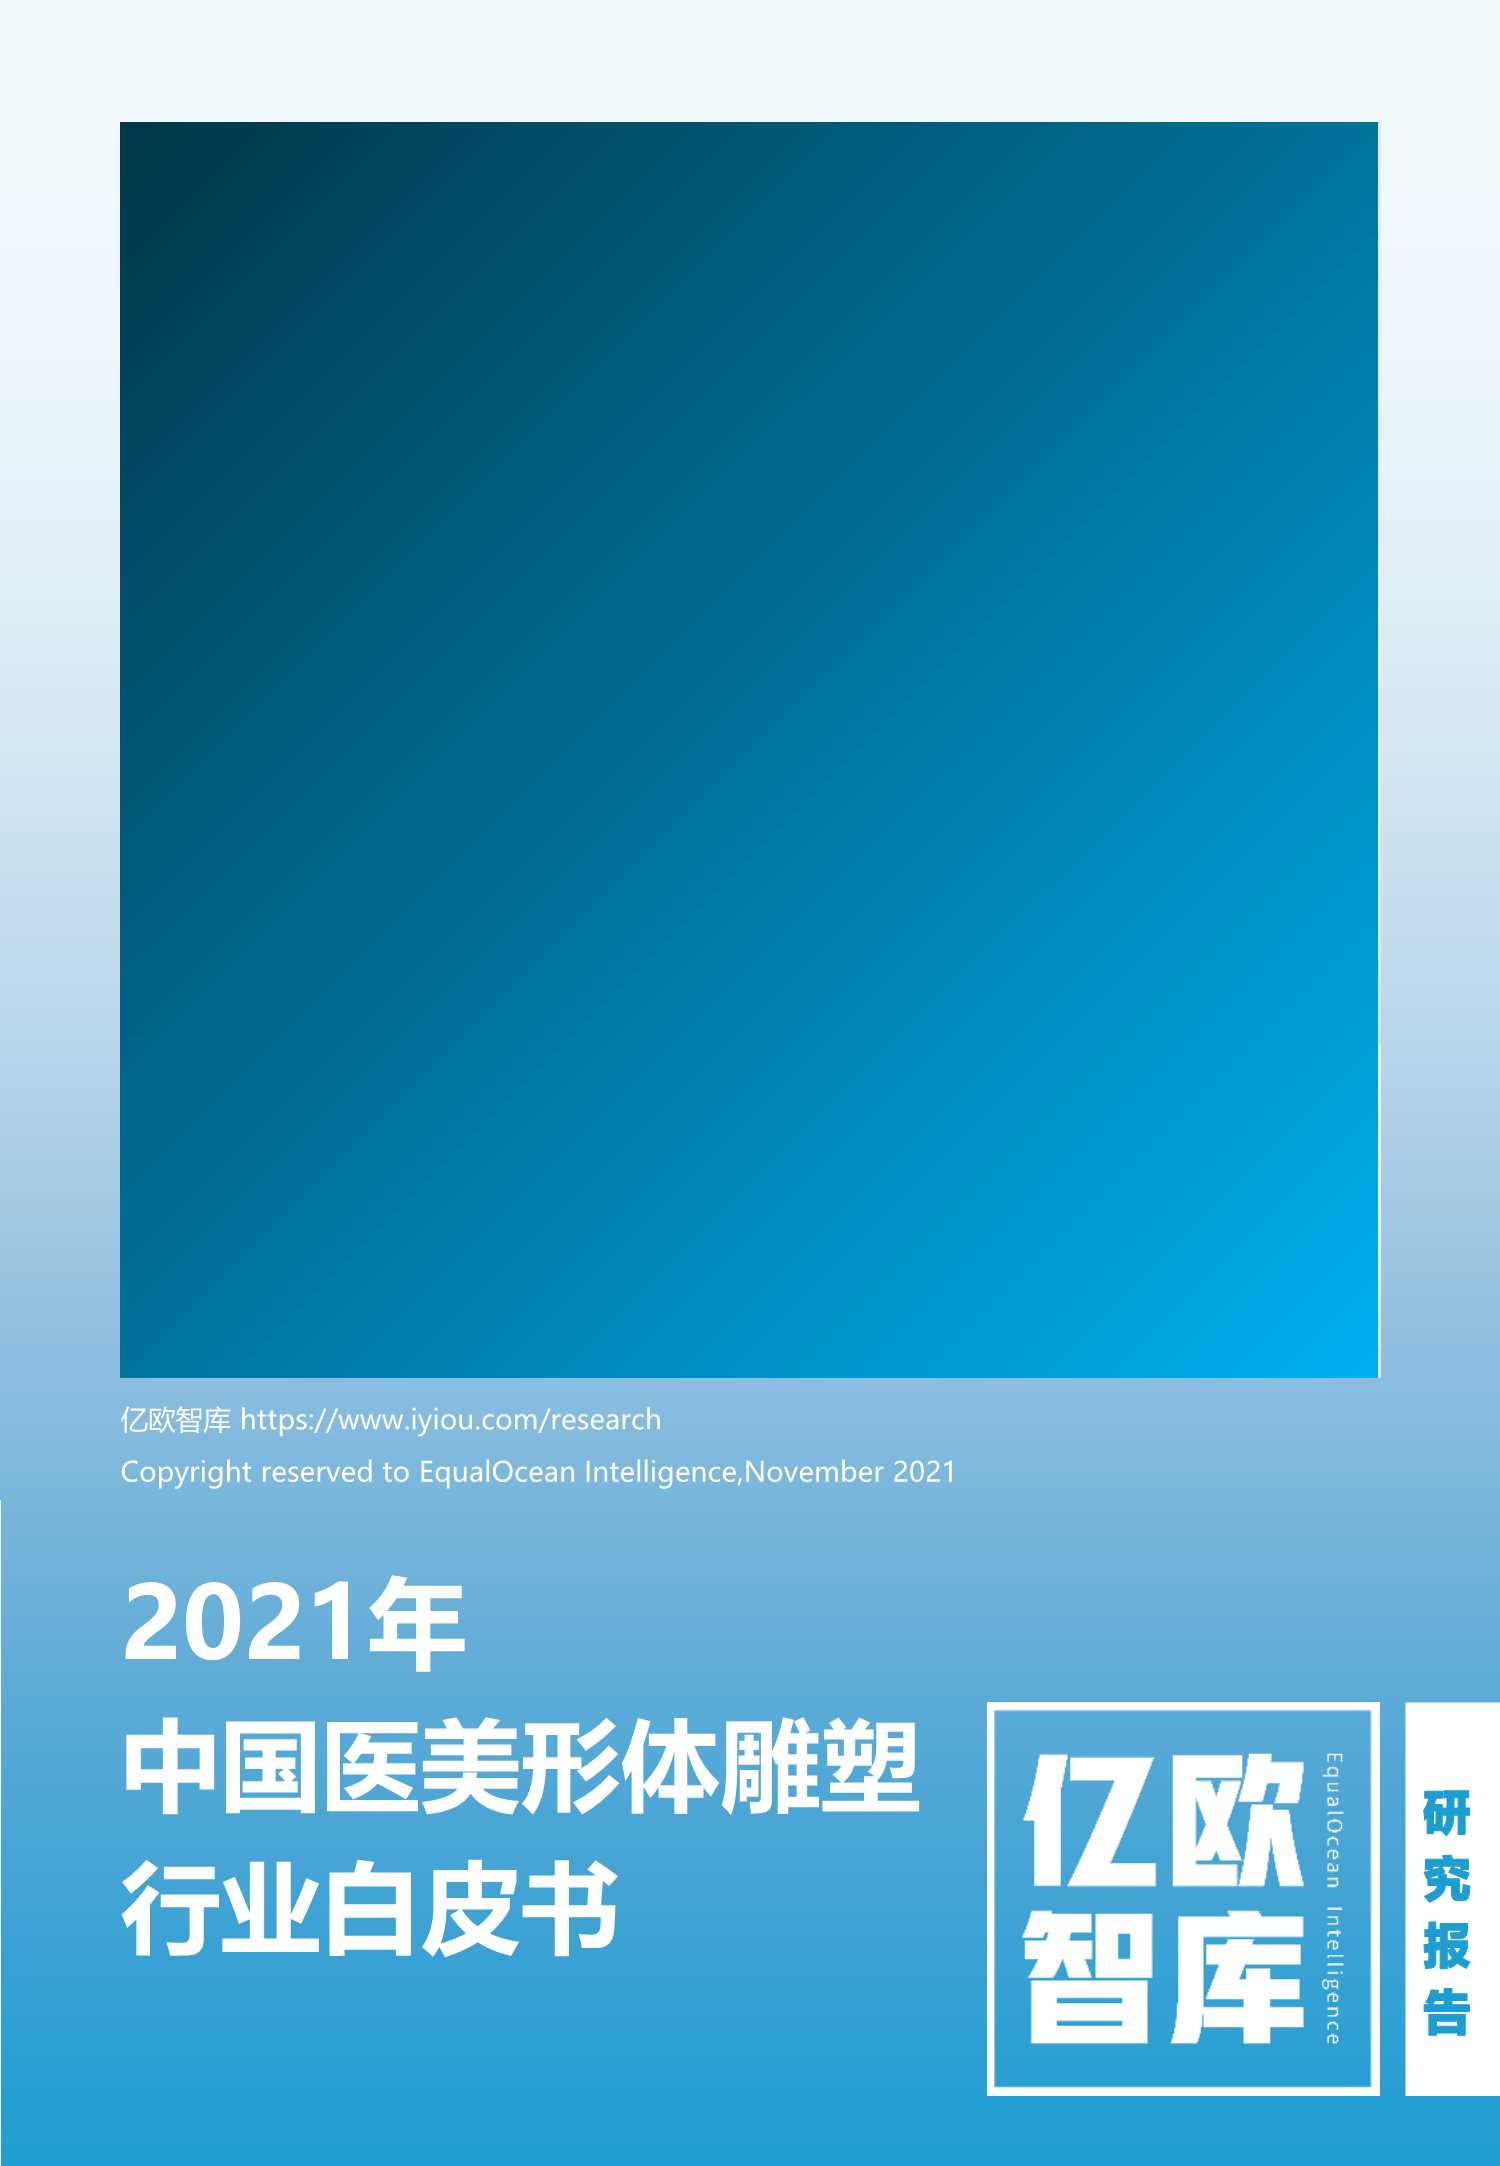 亿欧智库-2021年中国医美形体雕塑行业白皮书-2021.11-30页